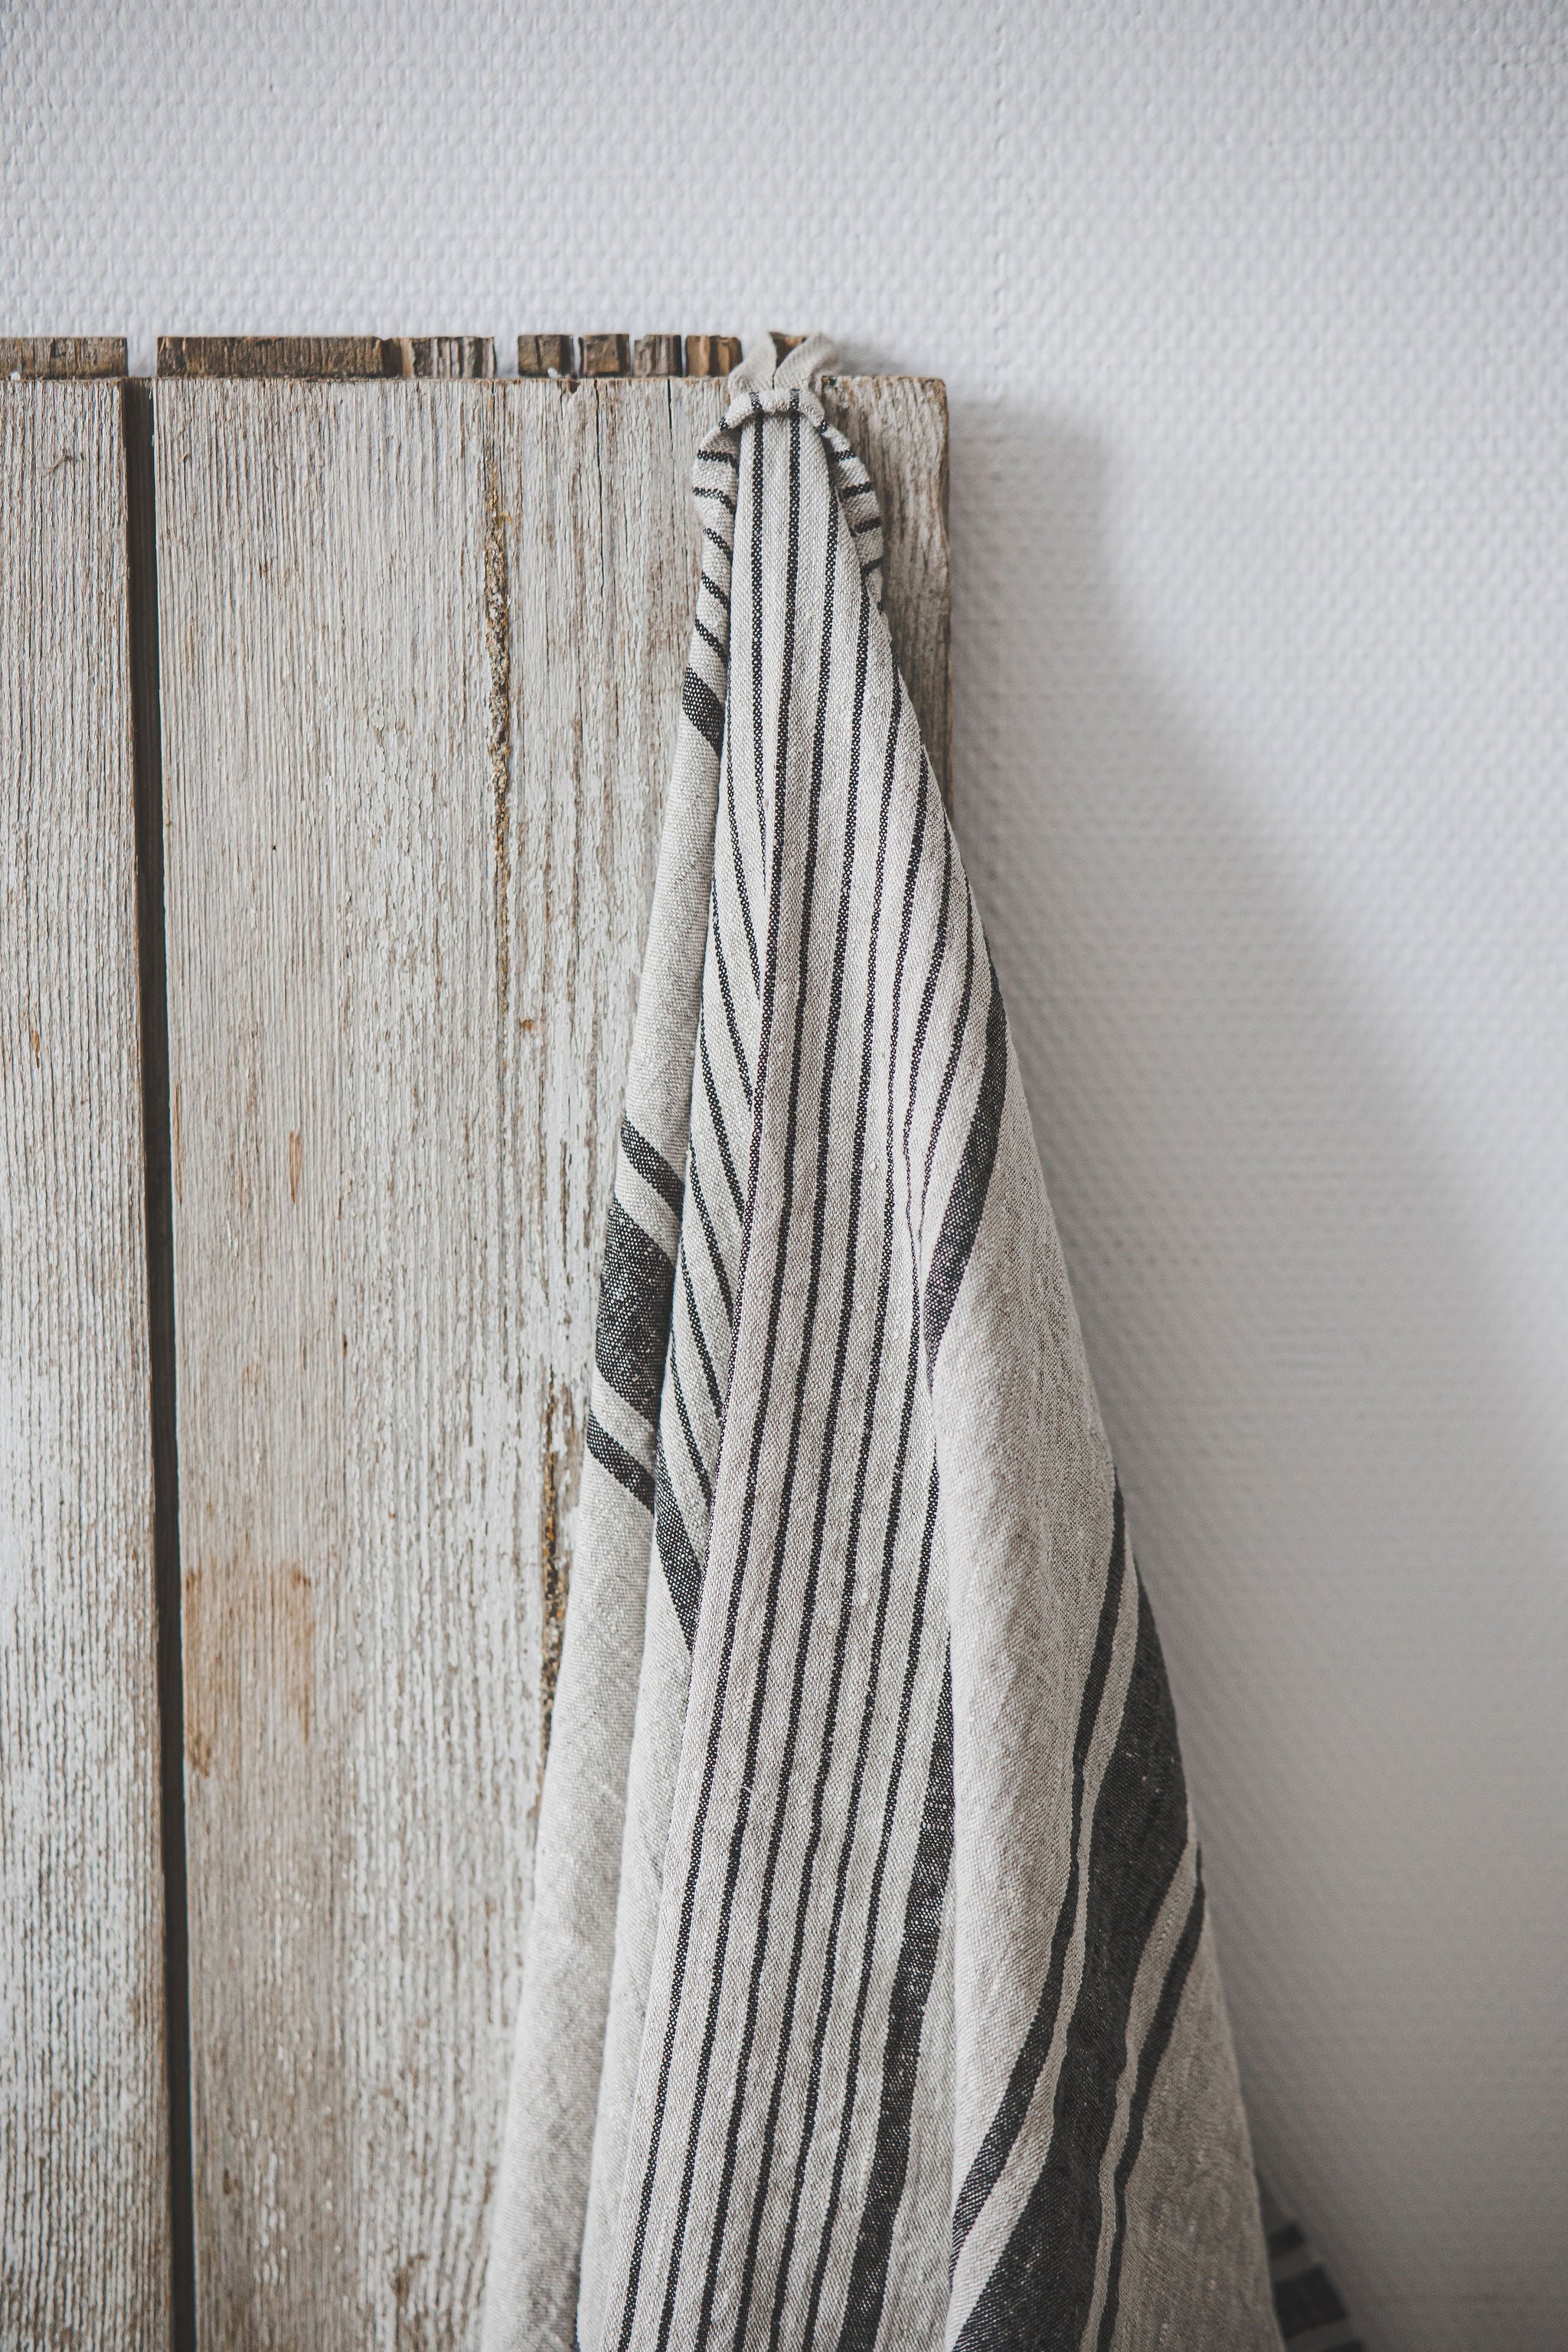 Linen bath towels with black stripes